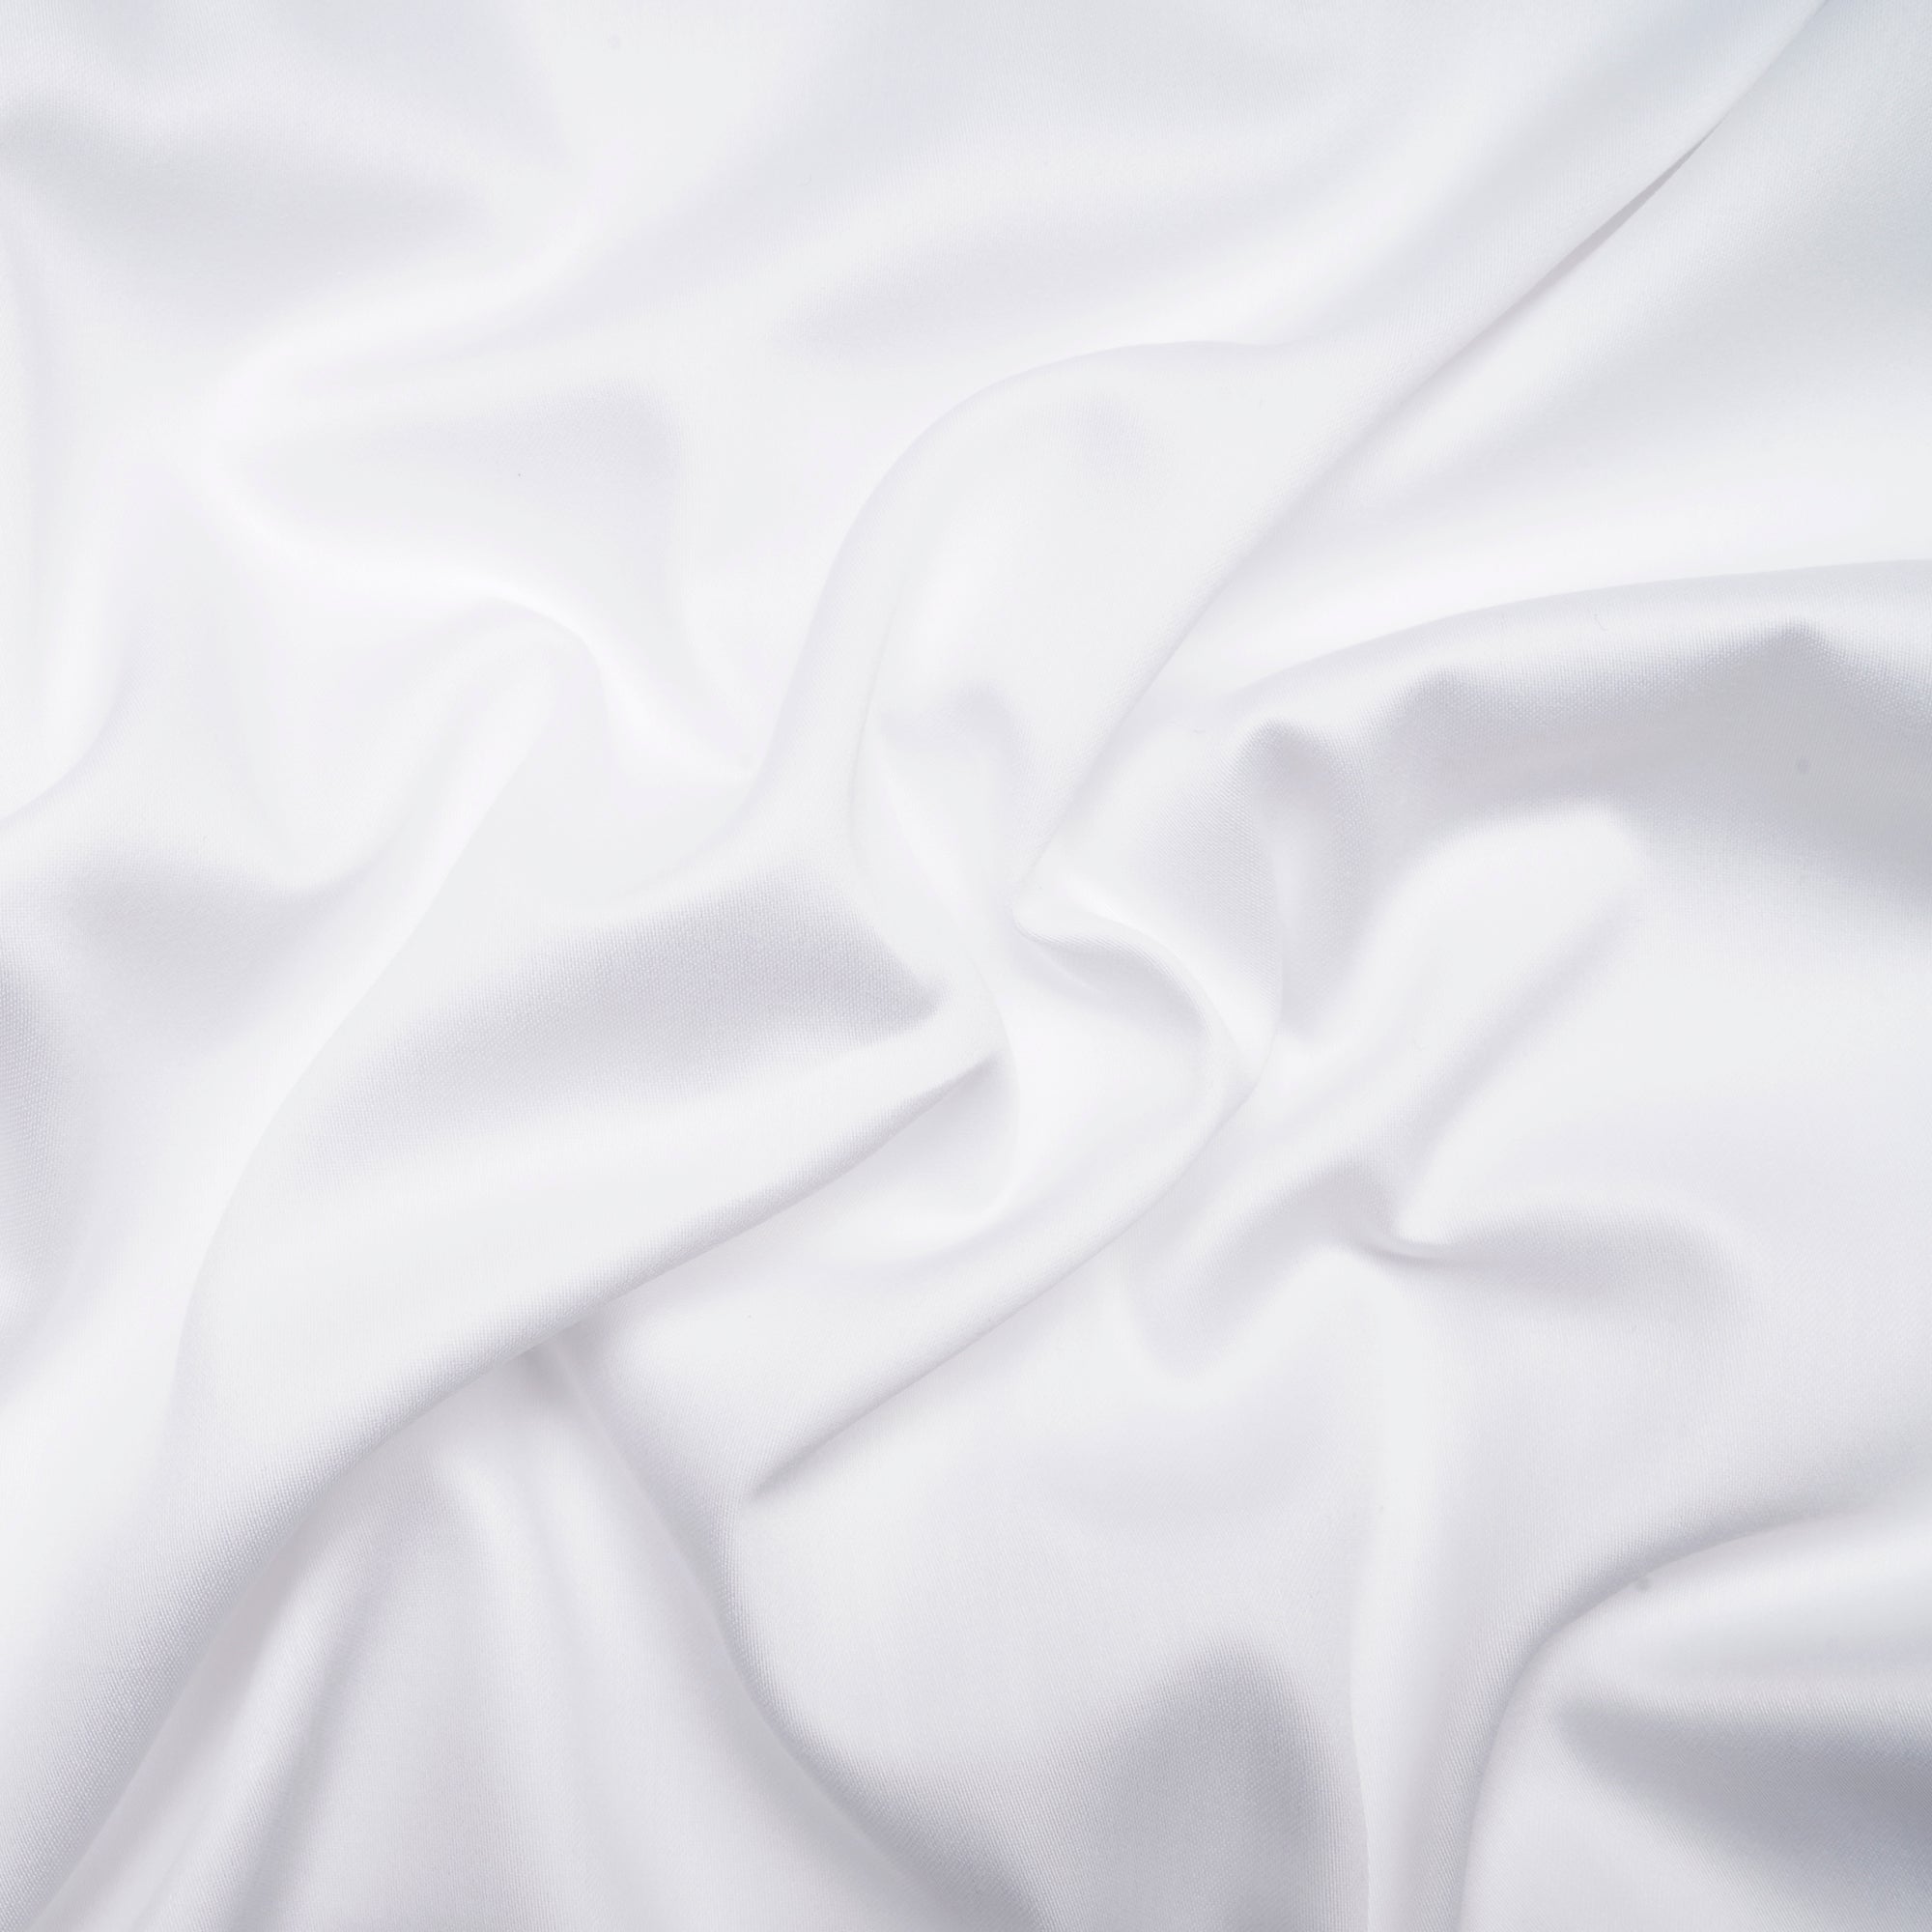 CUT PIECE) White Dyeable Pure Lawn Cotton Satin Plain Fabric